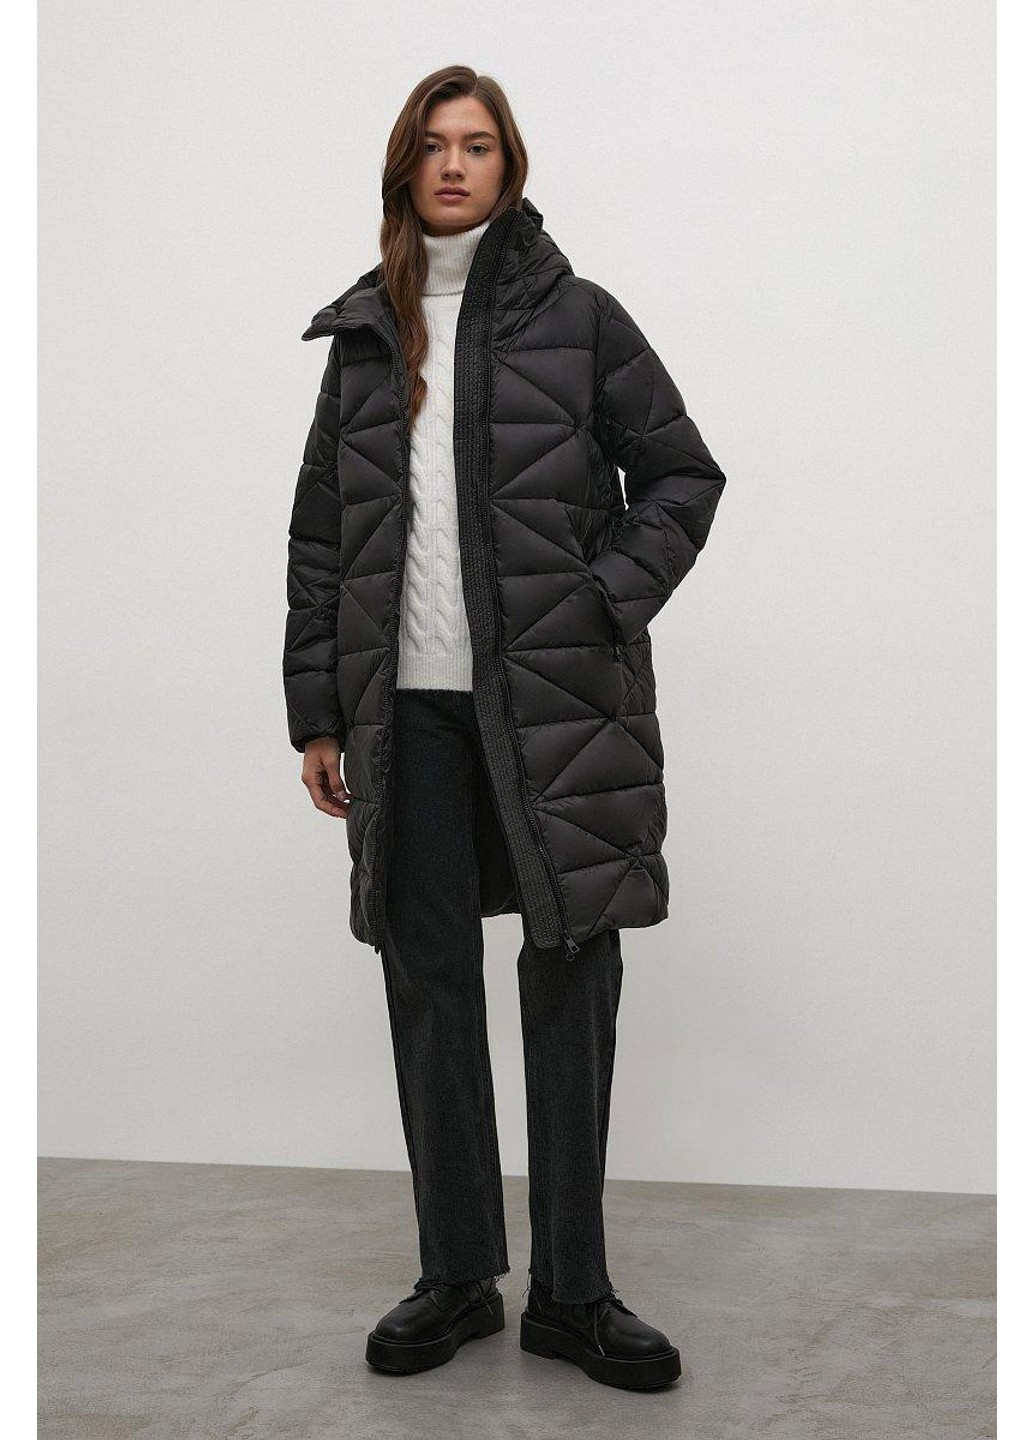 Черная зимняя куртка fwb11075-200 Finn Flare